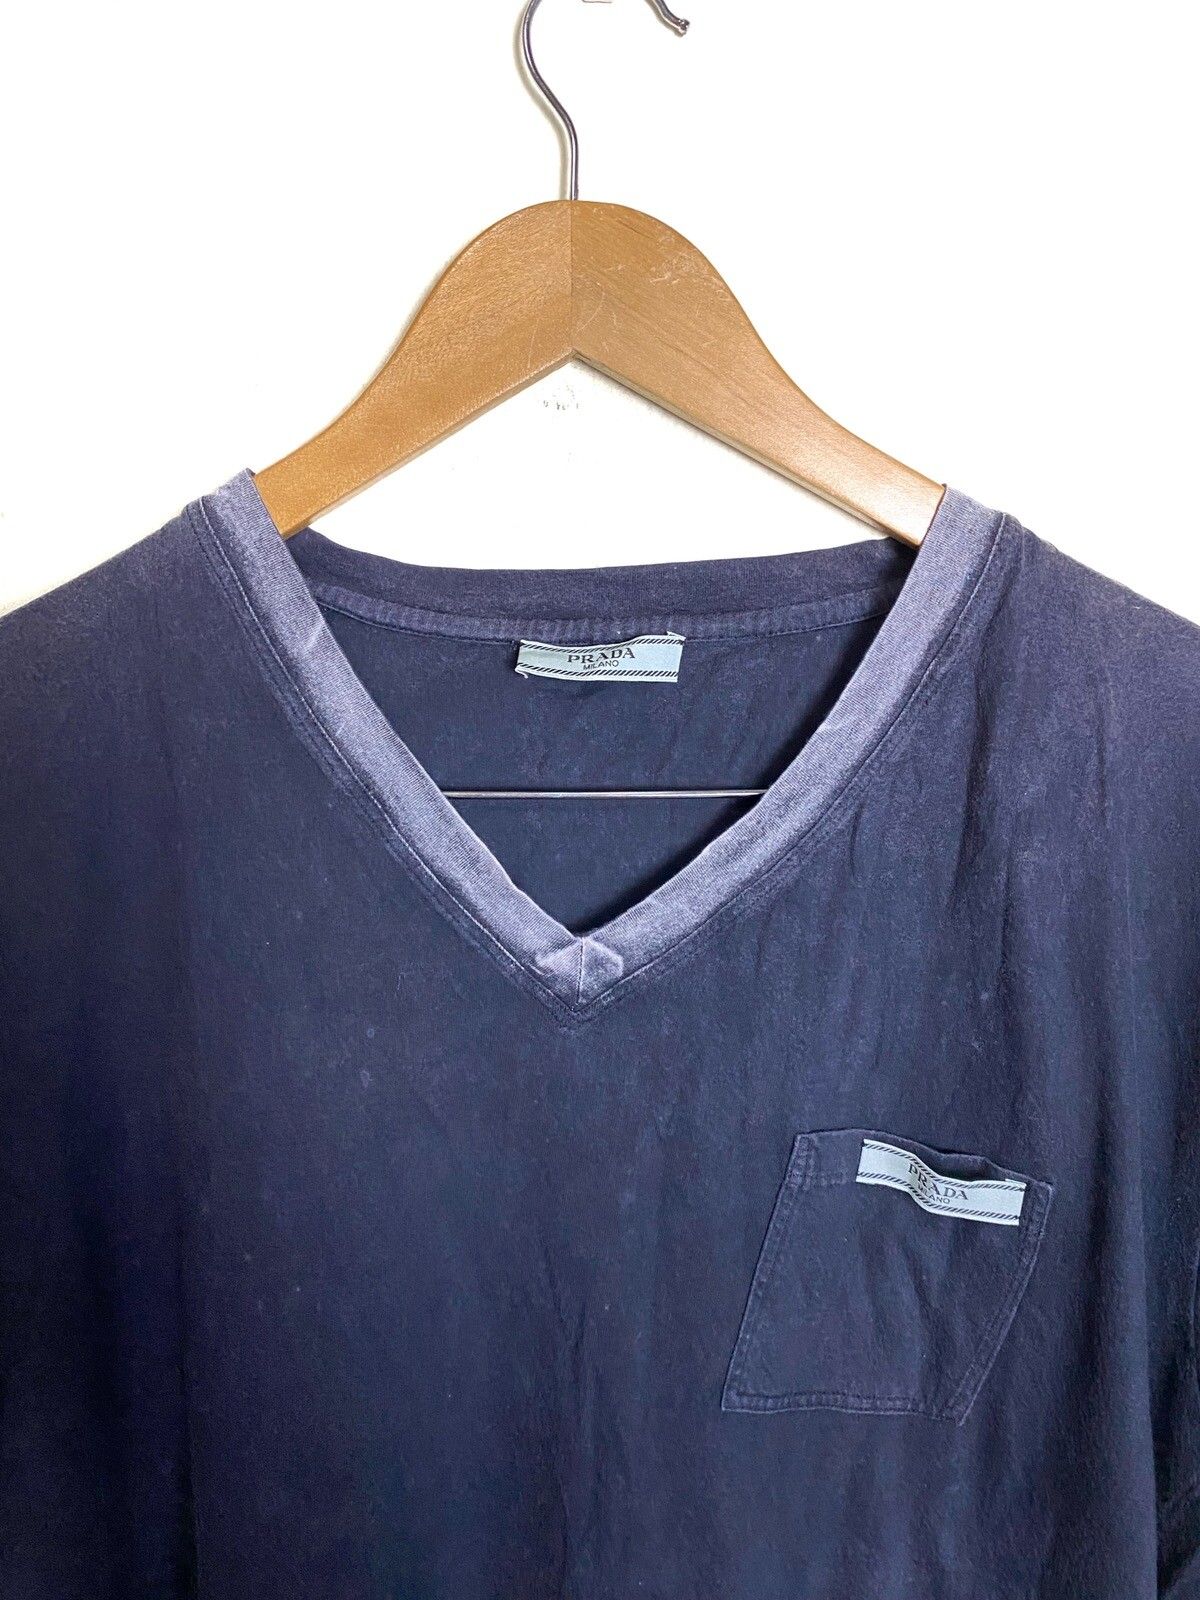 Vintage PRADA V Neck tshirt - 2